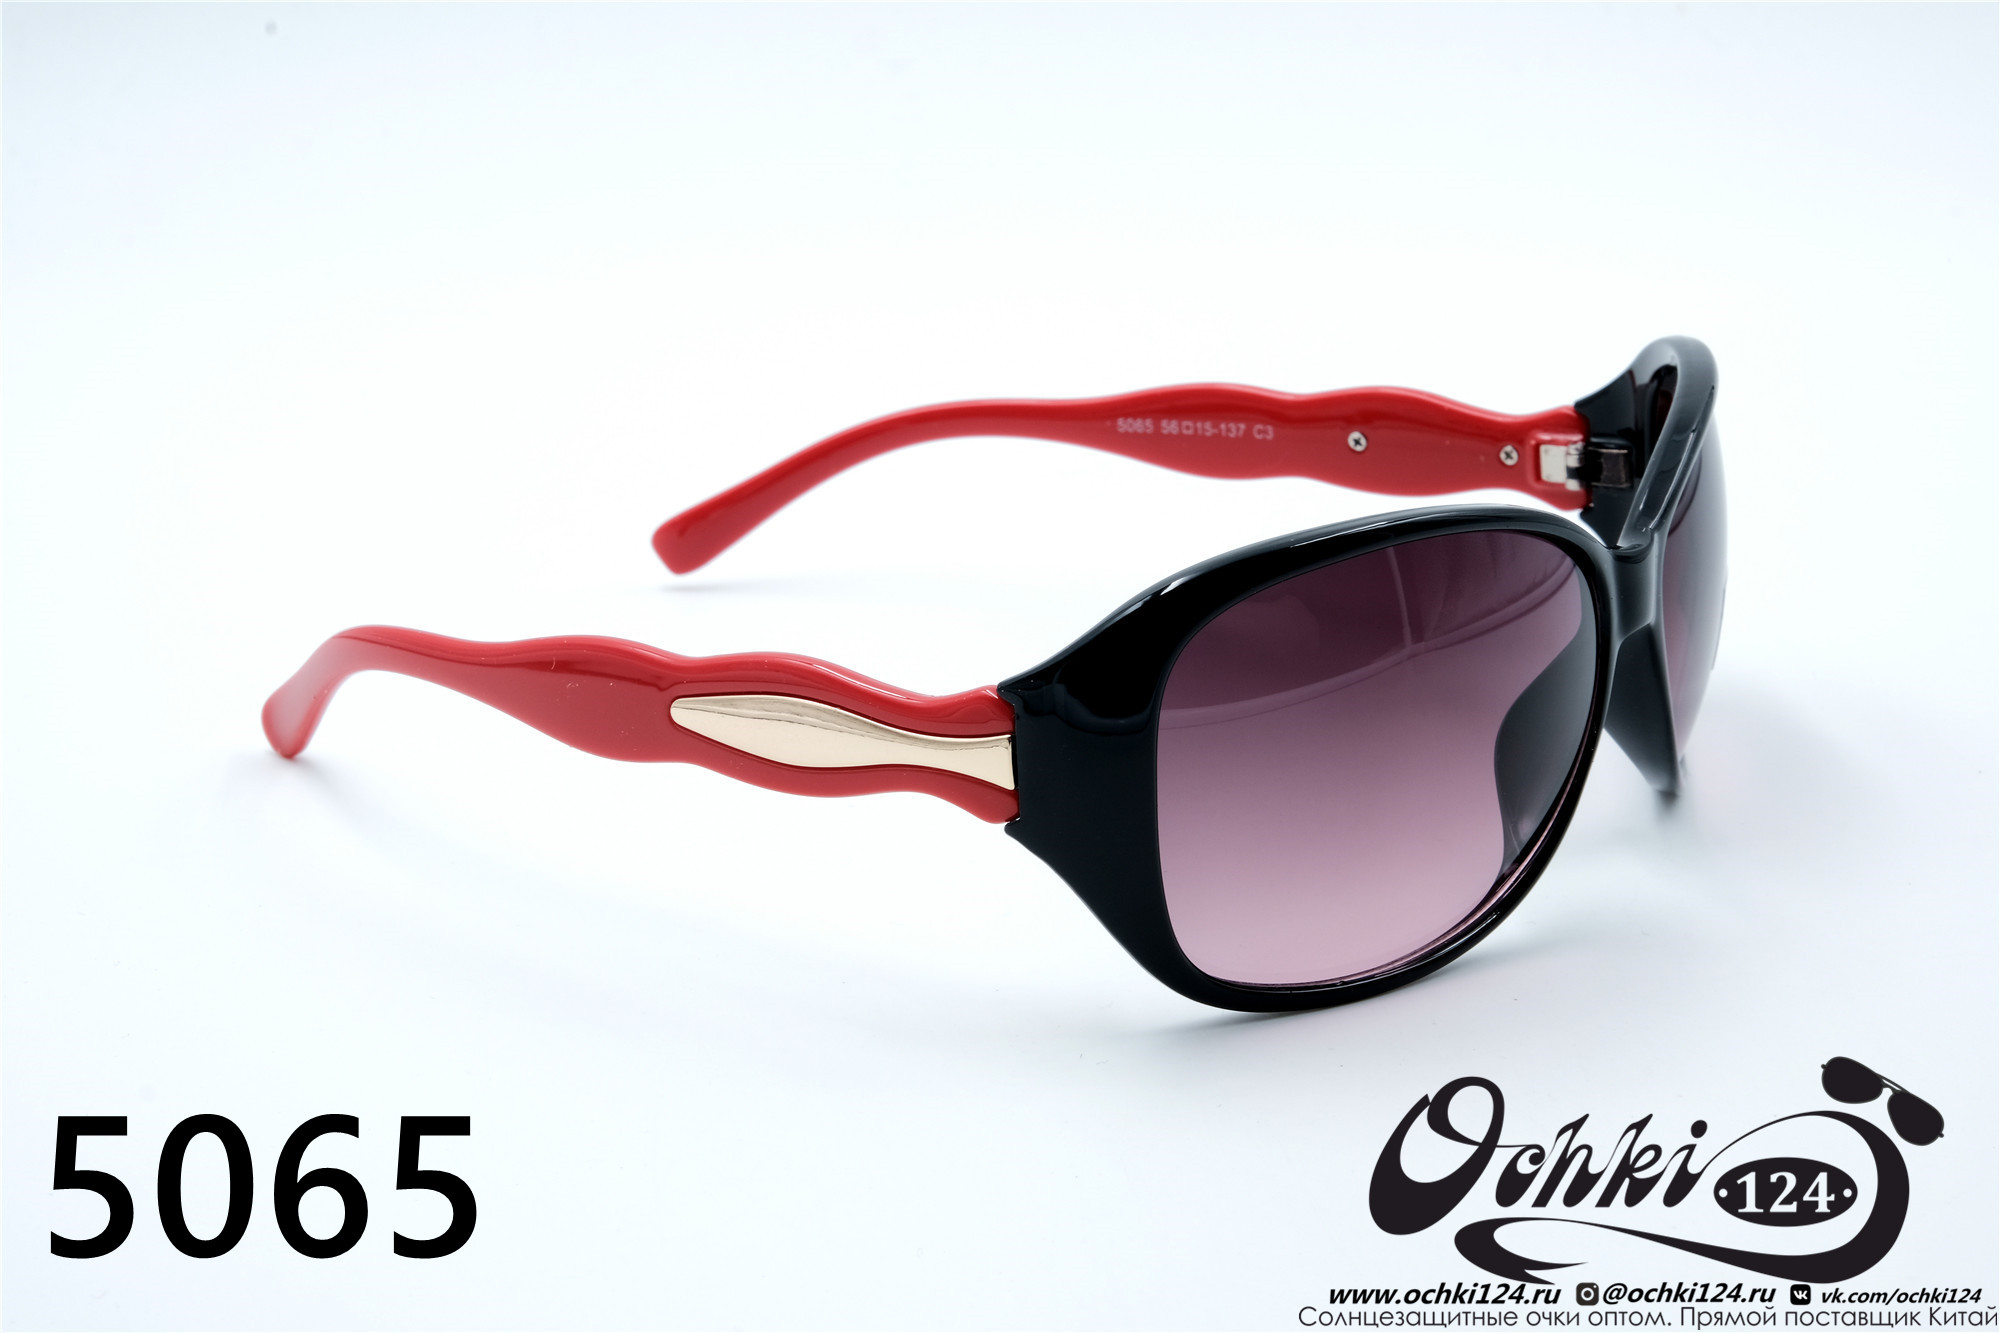  Солнцезащитные очки картинка 2022 Женские Лисички Aras 5065-3 